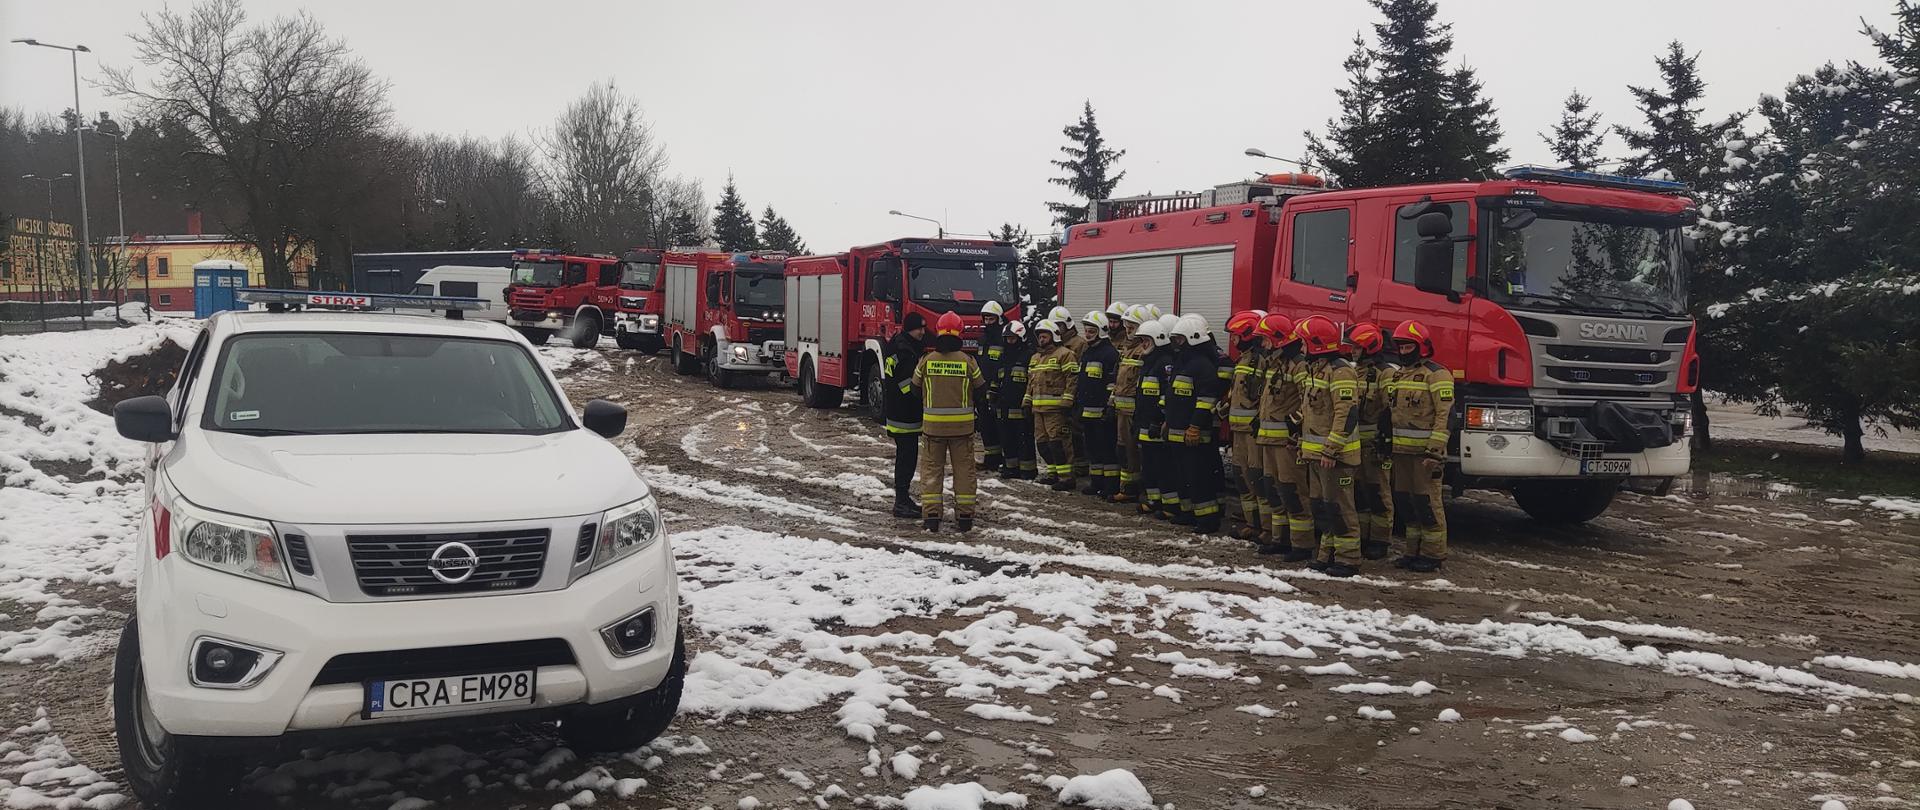 Zdjęcie na pierwszym planie przedstawia samochód operacyjny straży pożarnej koloru białego, na drugim planie strażaków PSP oraz OSP podczas odprawy z dowódcą JRG, na trzecim planie wozy strażackie koloru czerwonego